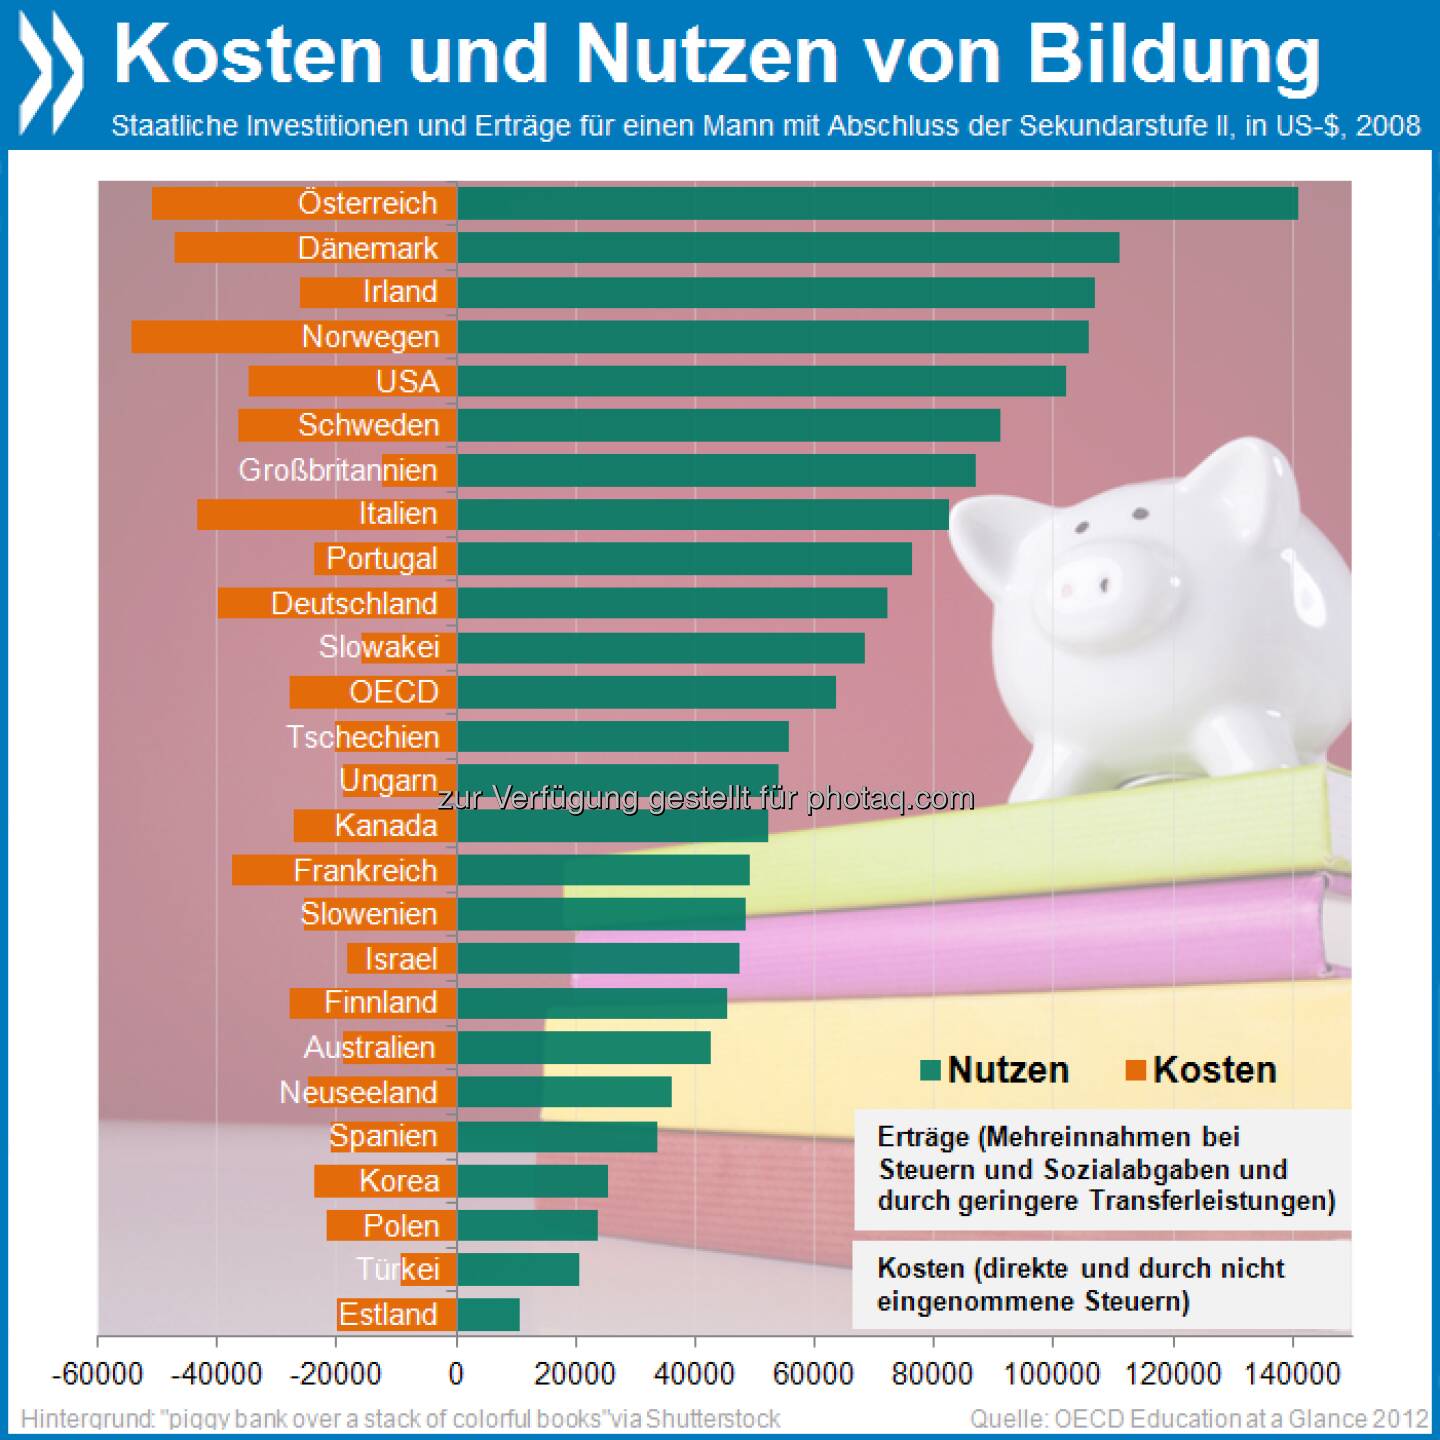 Smart Investment: Fast alle OECD-Länder erhalten im Laufe eines Arbeitslebens mehr zurück als sie für die Sekundarbildung ihrer Bewohner ausgeben. Am größten ist der Gewinn in Österreich: 90.000 Dollar (kaufkraftbereinigt).

Mehr Infos unter http://bit.ly/P7gKz6 (S. 201f.)